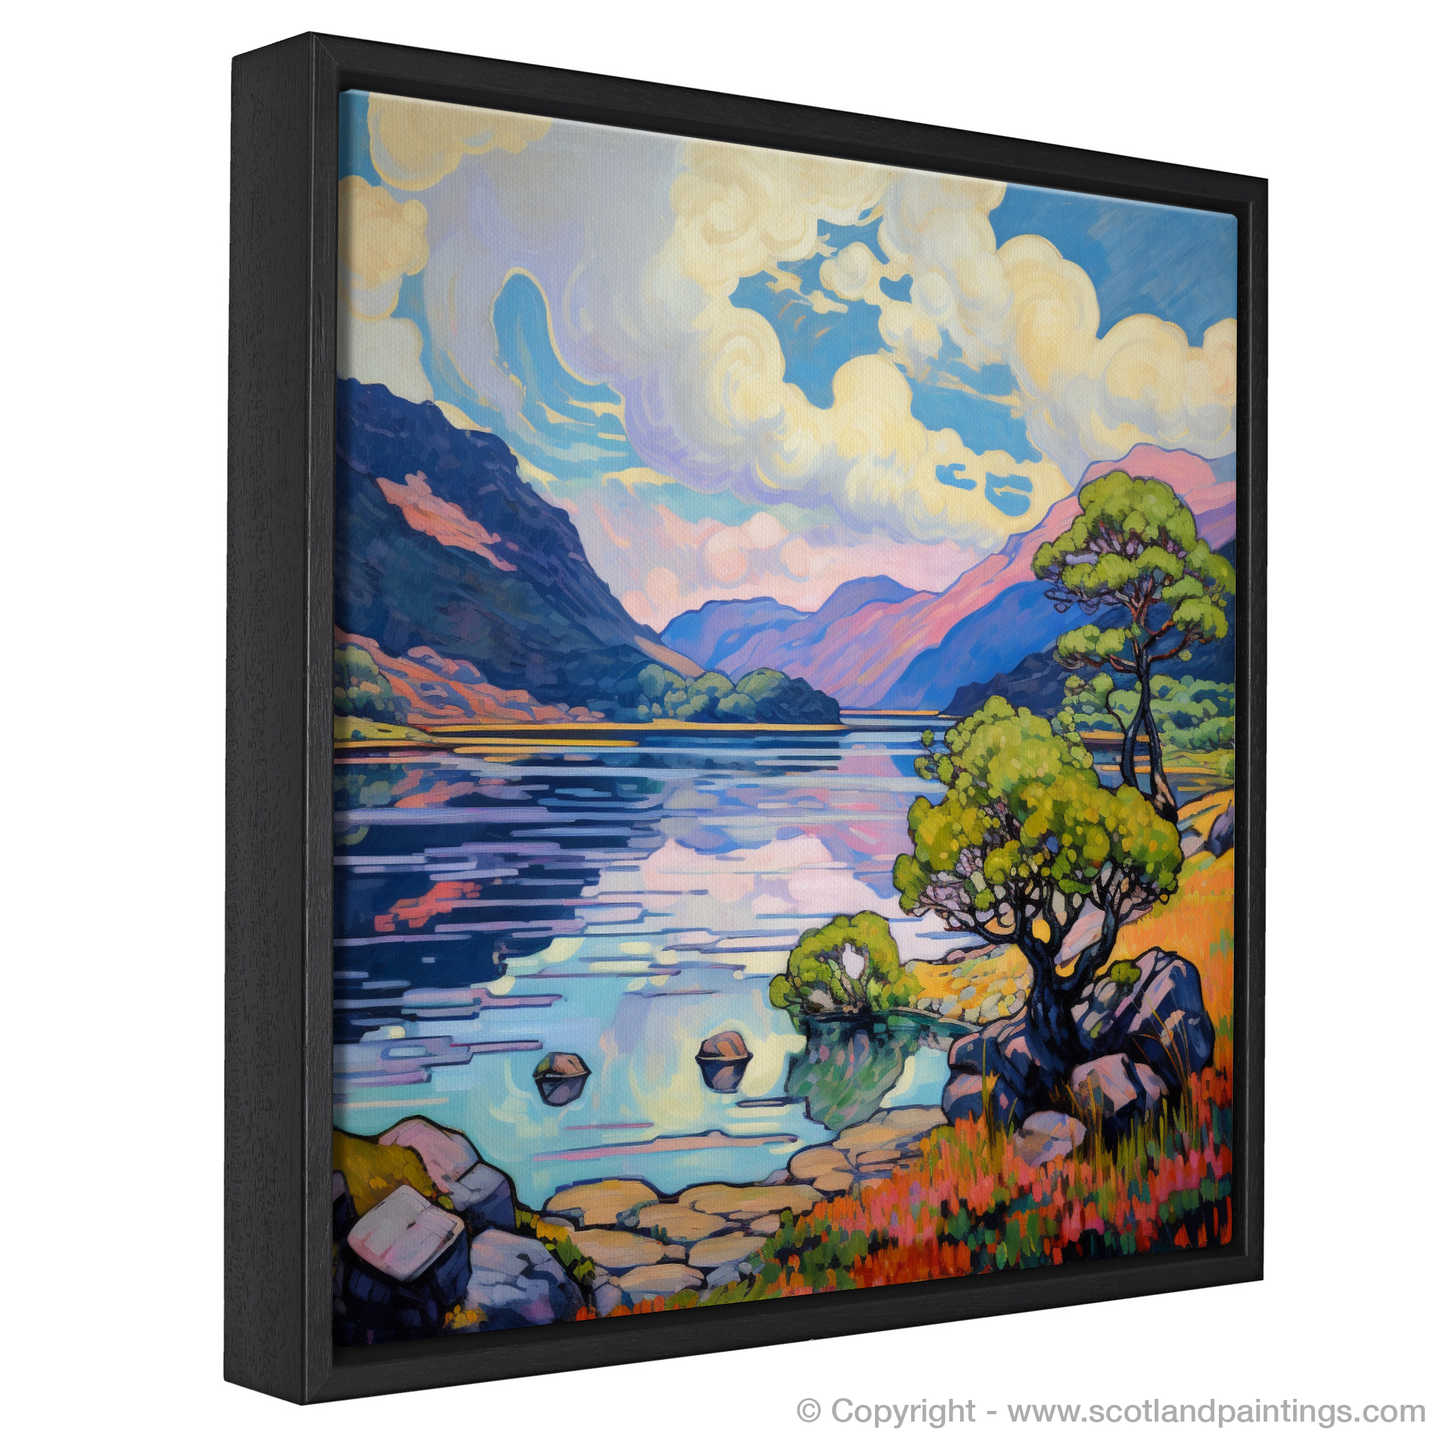 Painting and Art Print of Loch Morar, Highlands in summer entitled "Summer Serenade at Loch Morar".